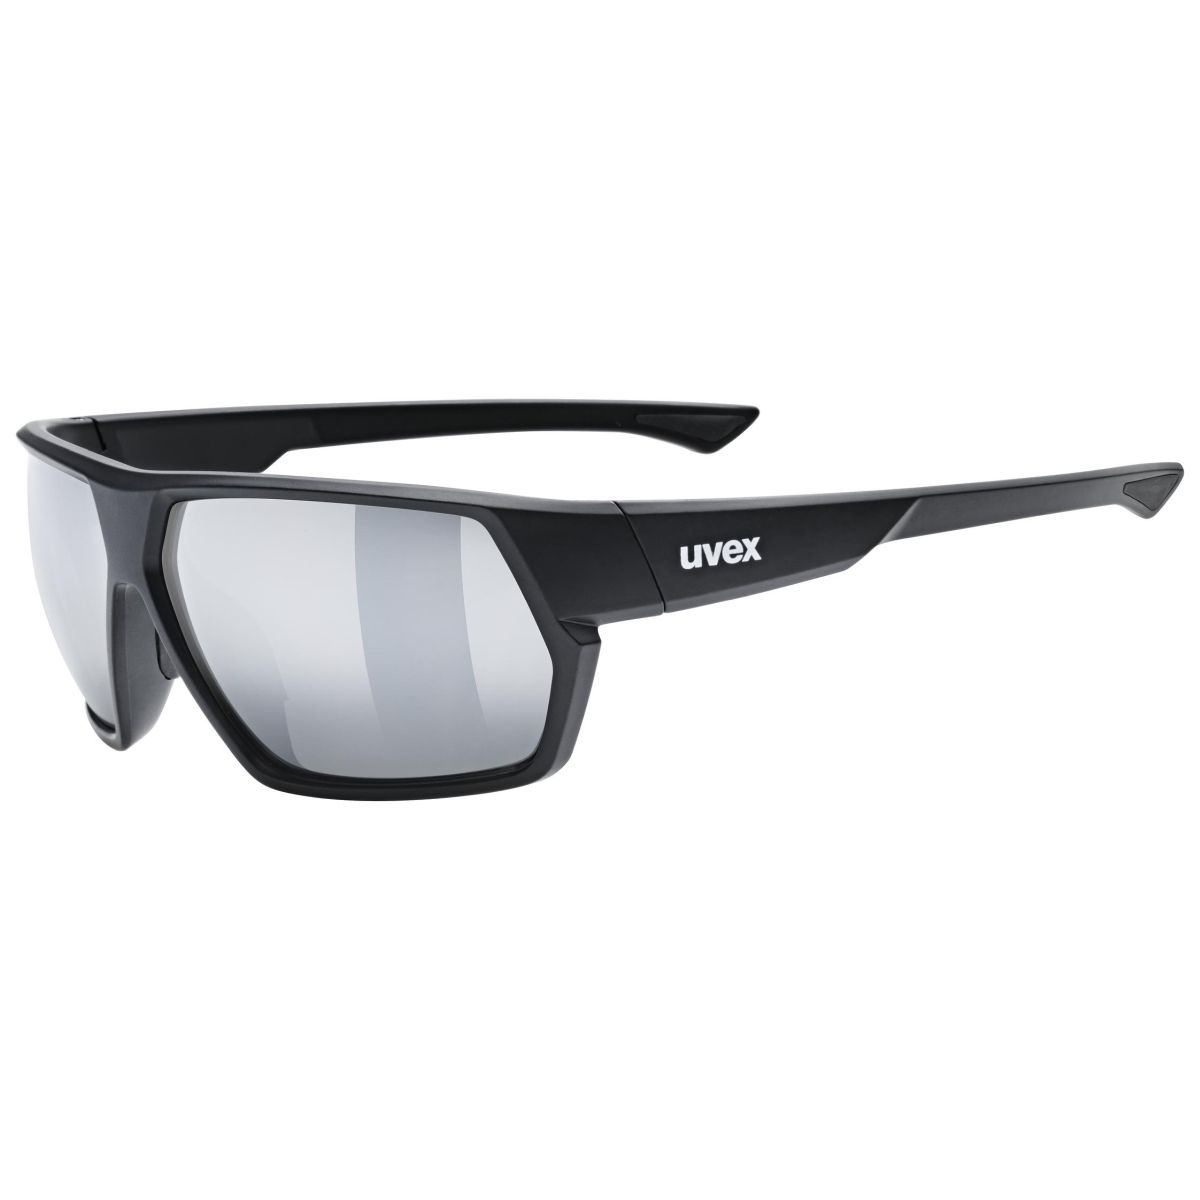 Produktbild von Uvex sportstyle 238 Brille - black matt/mirror silver